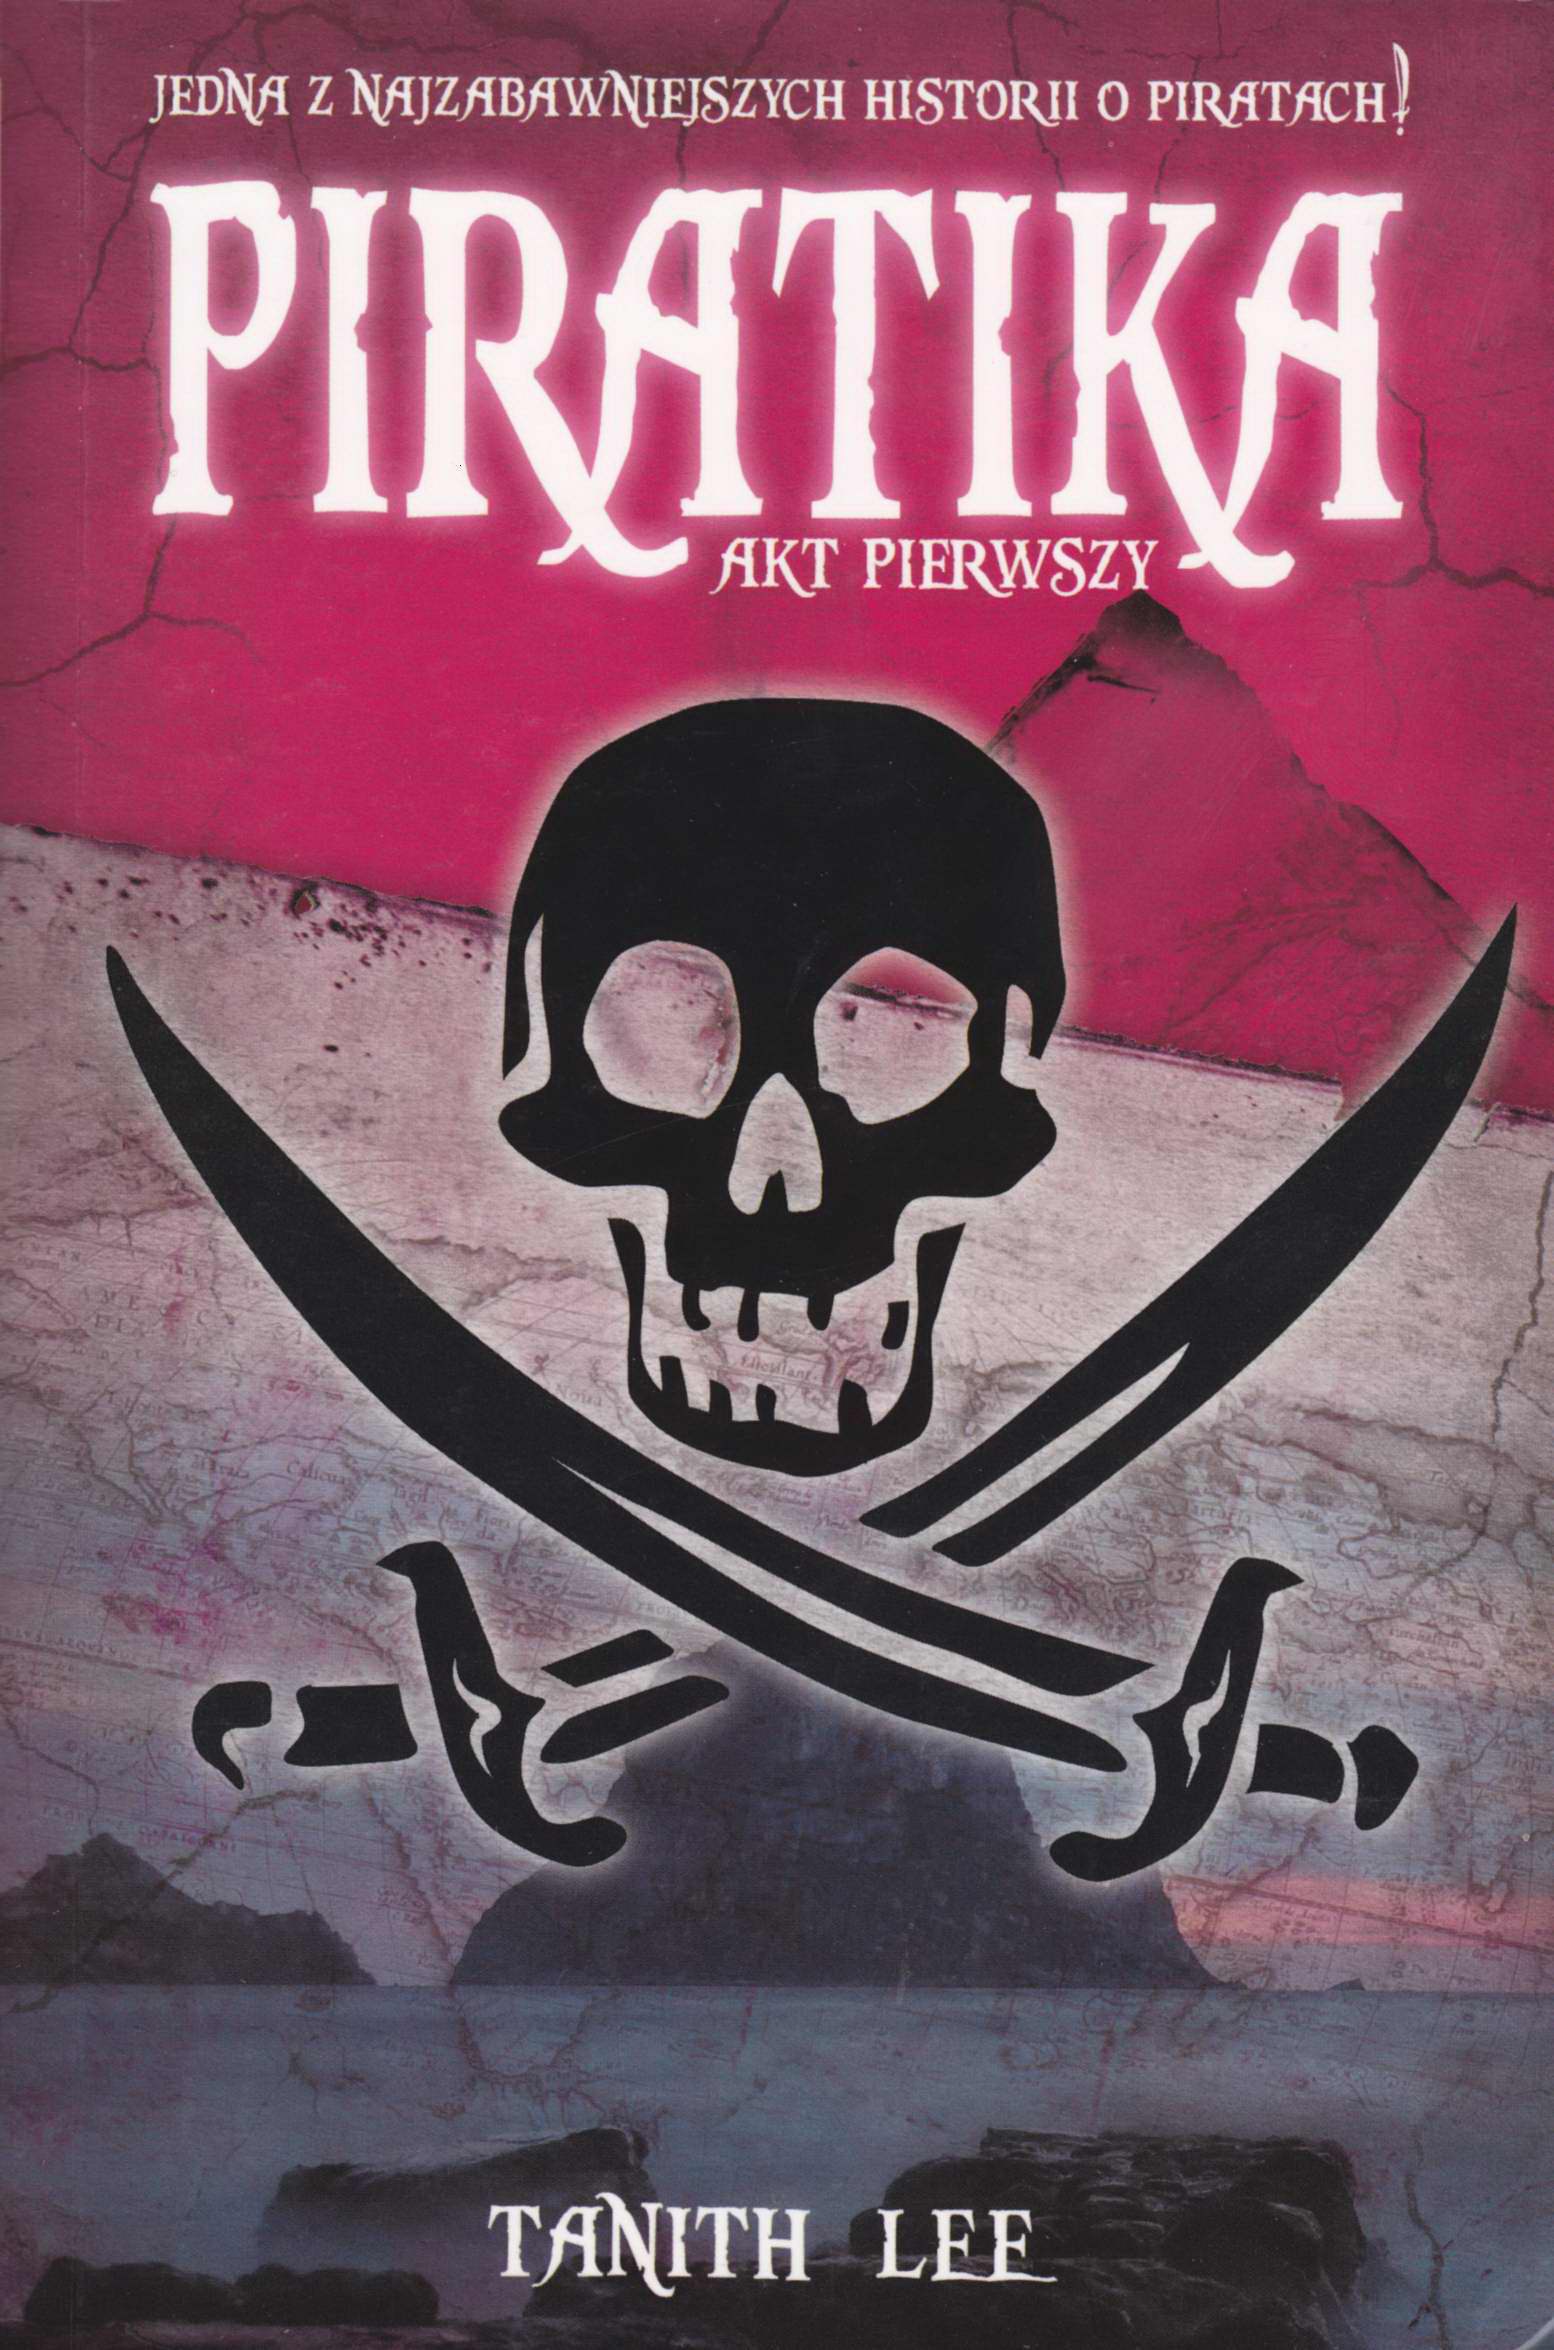 Piratika Akt Pierwsky <br>(Piratica)